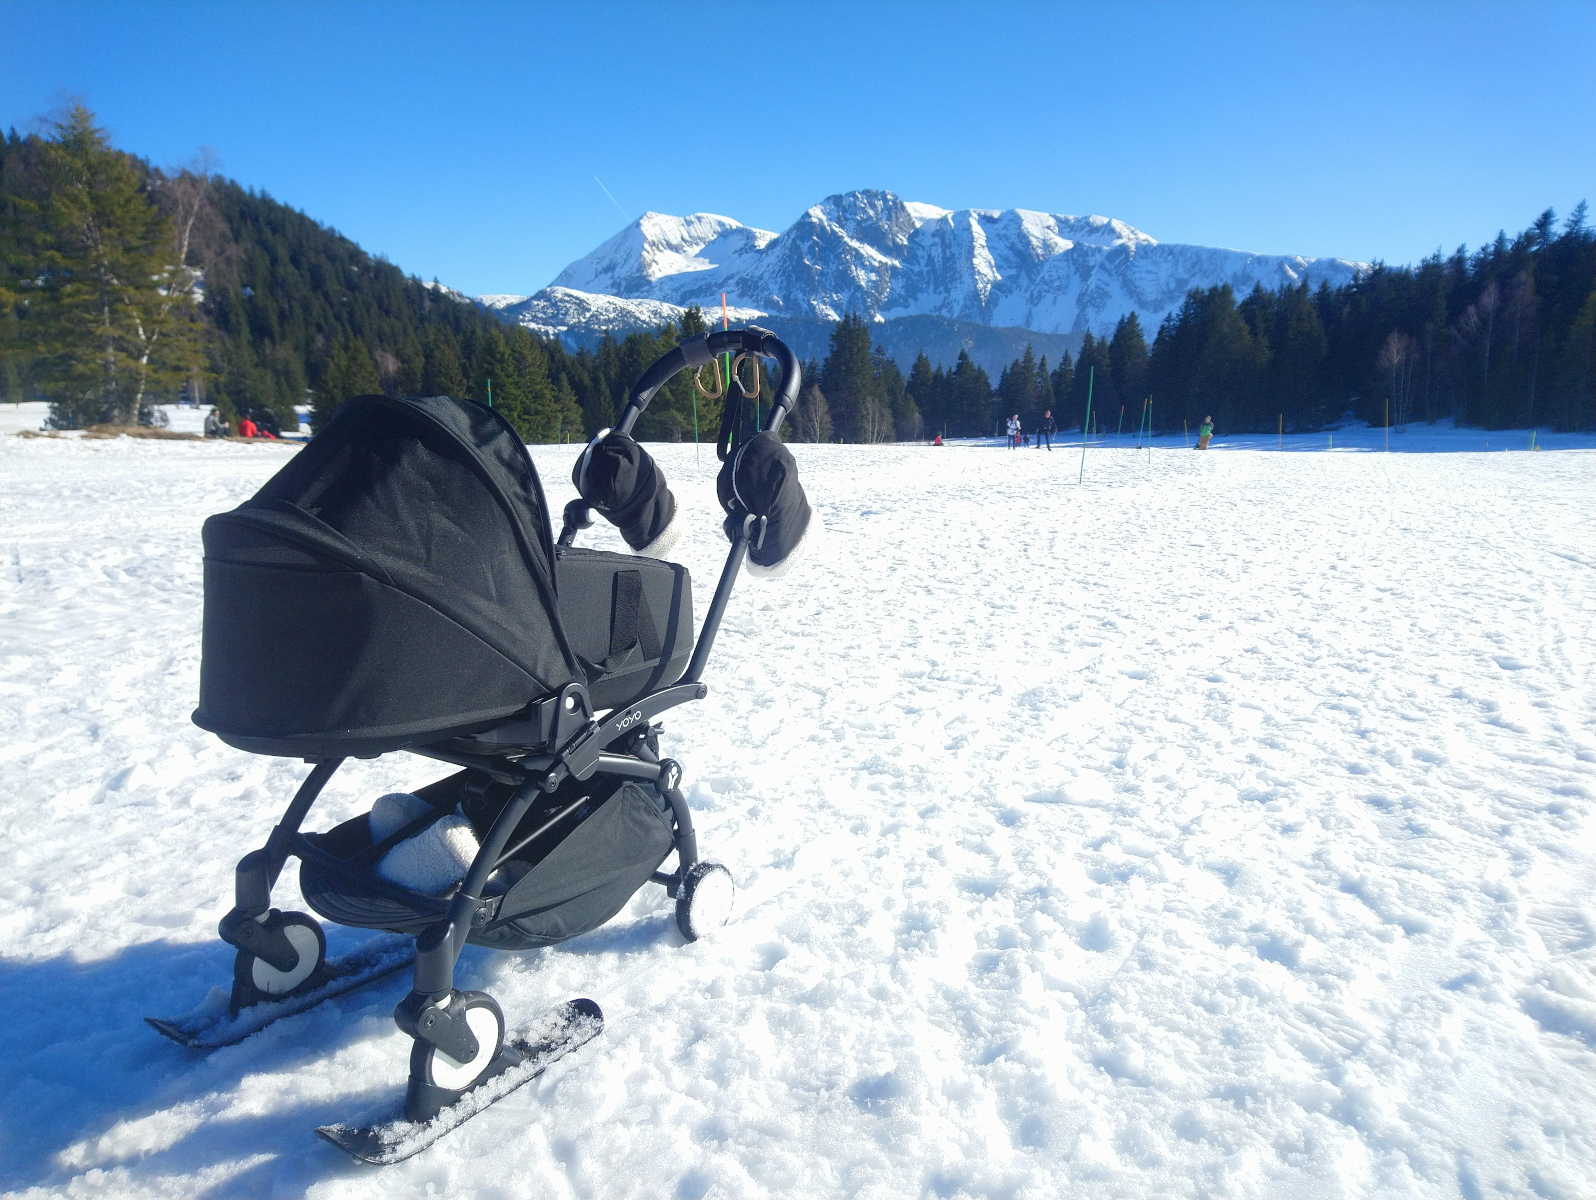 Chamrousse expérience famille aventure bébé poussette à skis plateau Arselle station ski montagne grenoble isere alpes france - © SD - OT Chamrousse